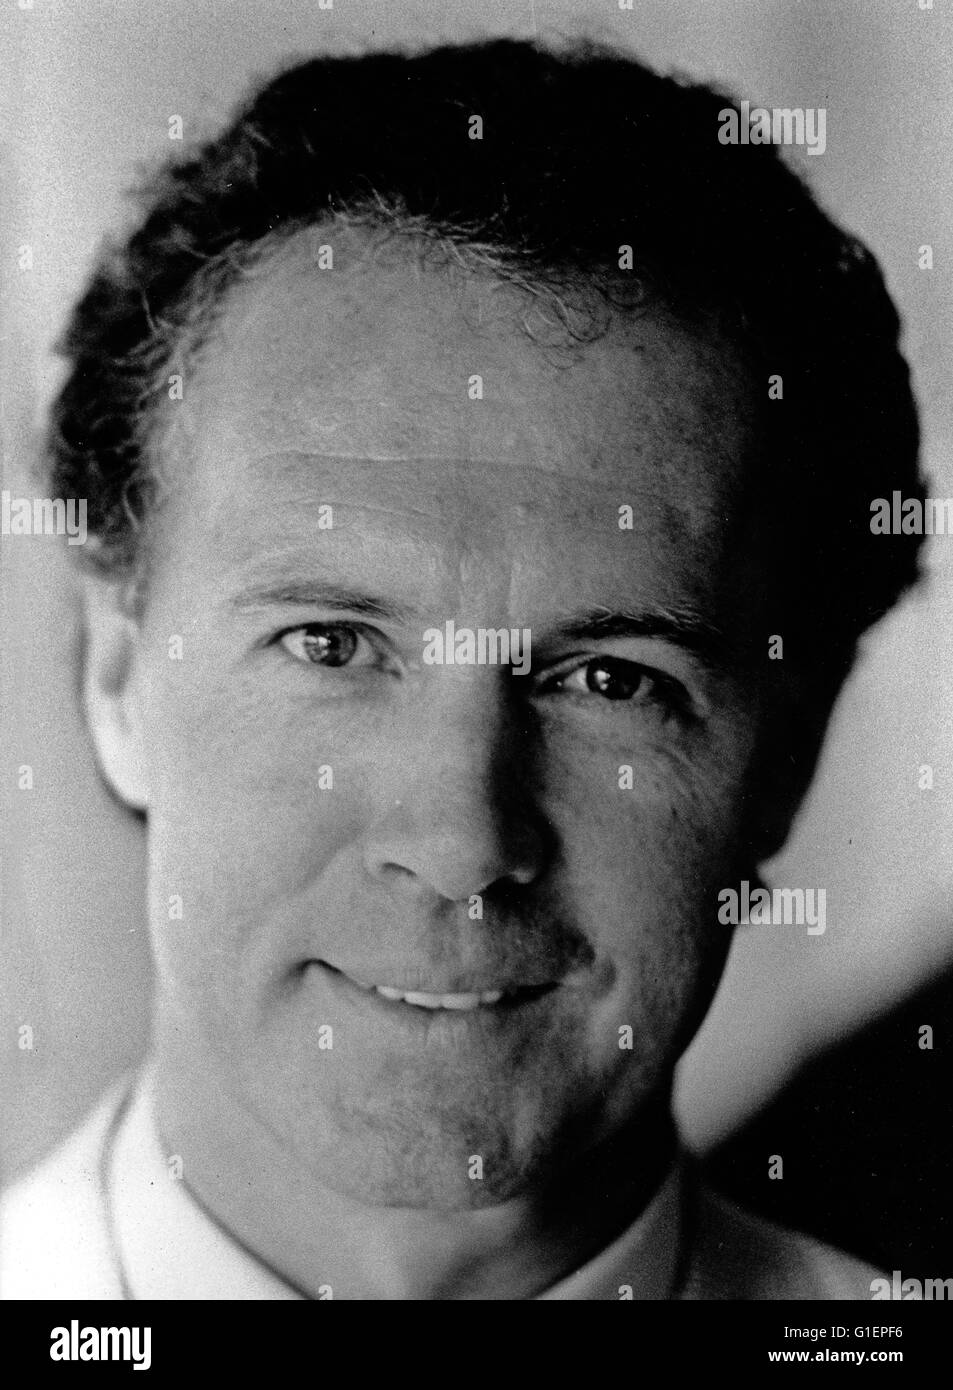 Der deutsche Fußballspieler und Manager Franz Beckenbauer, Deutschland 1980er Jahre. German football player and manager Franz Beckenbauer, Germany 1980s. Stock Photo